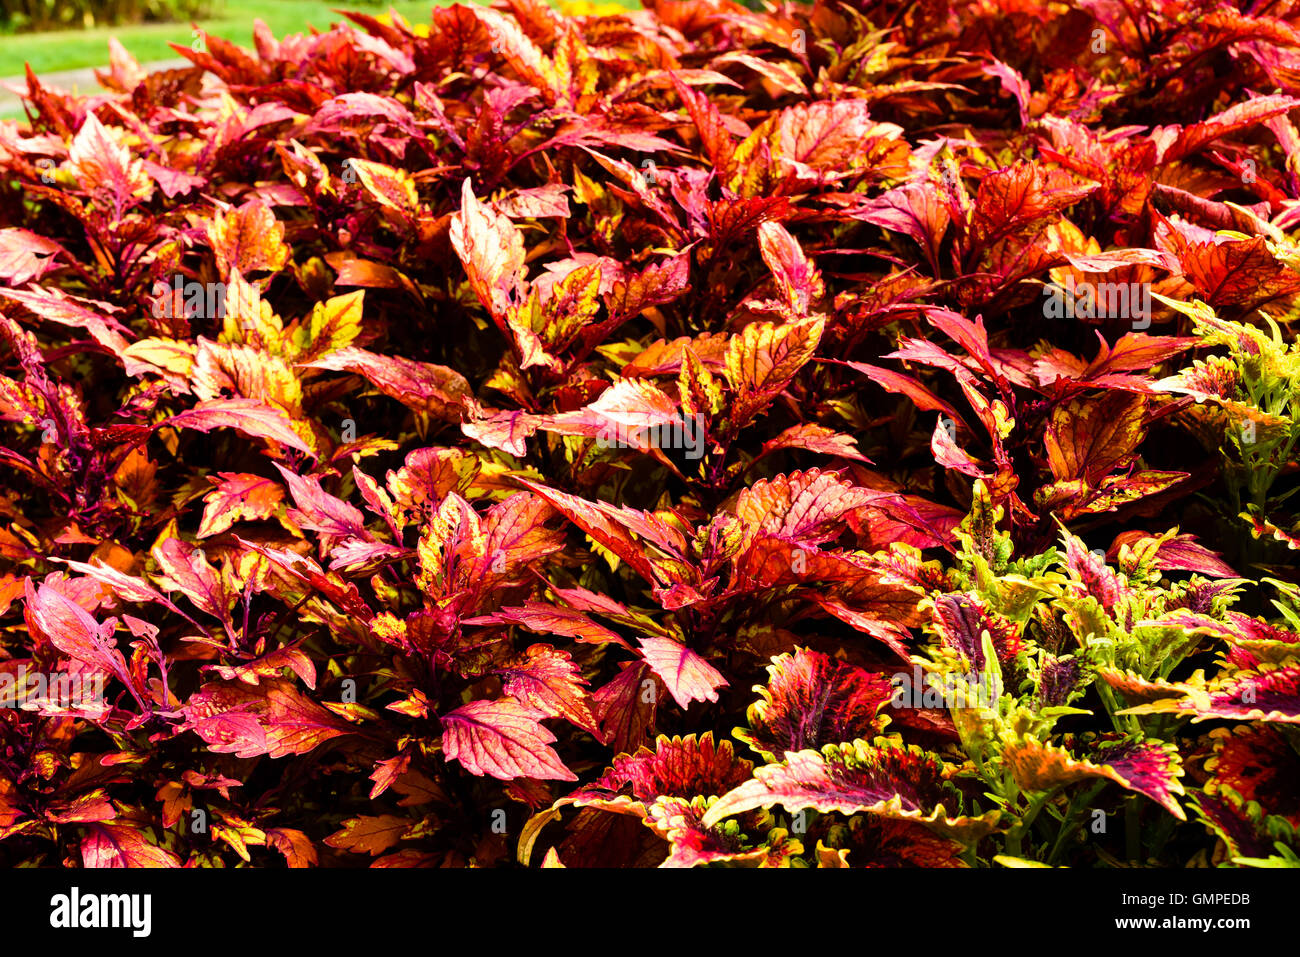 Plectranthus Scutellarioides, Coleus oder bemalte Brennnessel. Hier die Sorte mit Rüschen Bordeaux in großer Zahl in ein Blumenbeet. Stockfoto